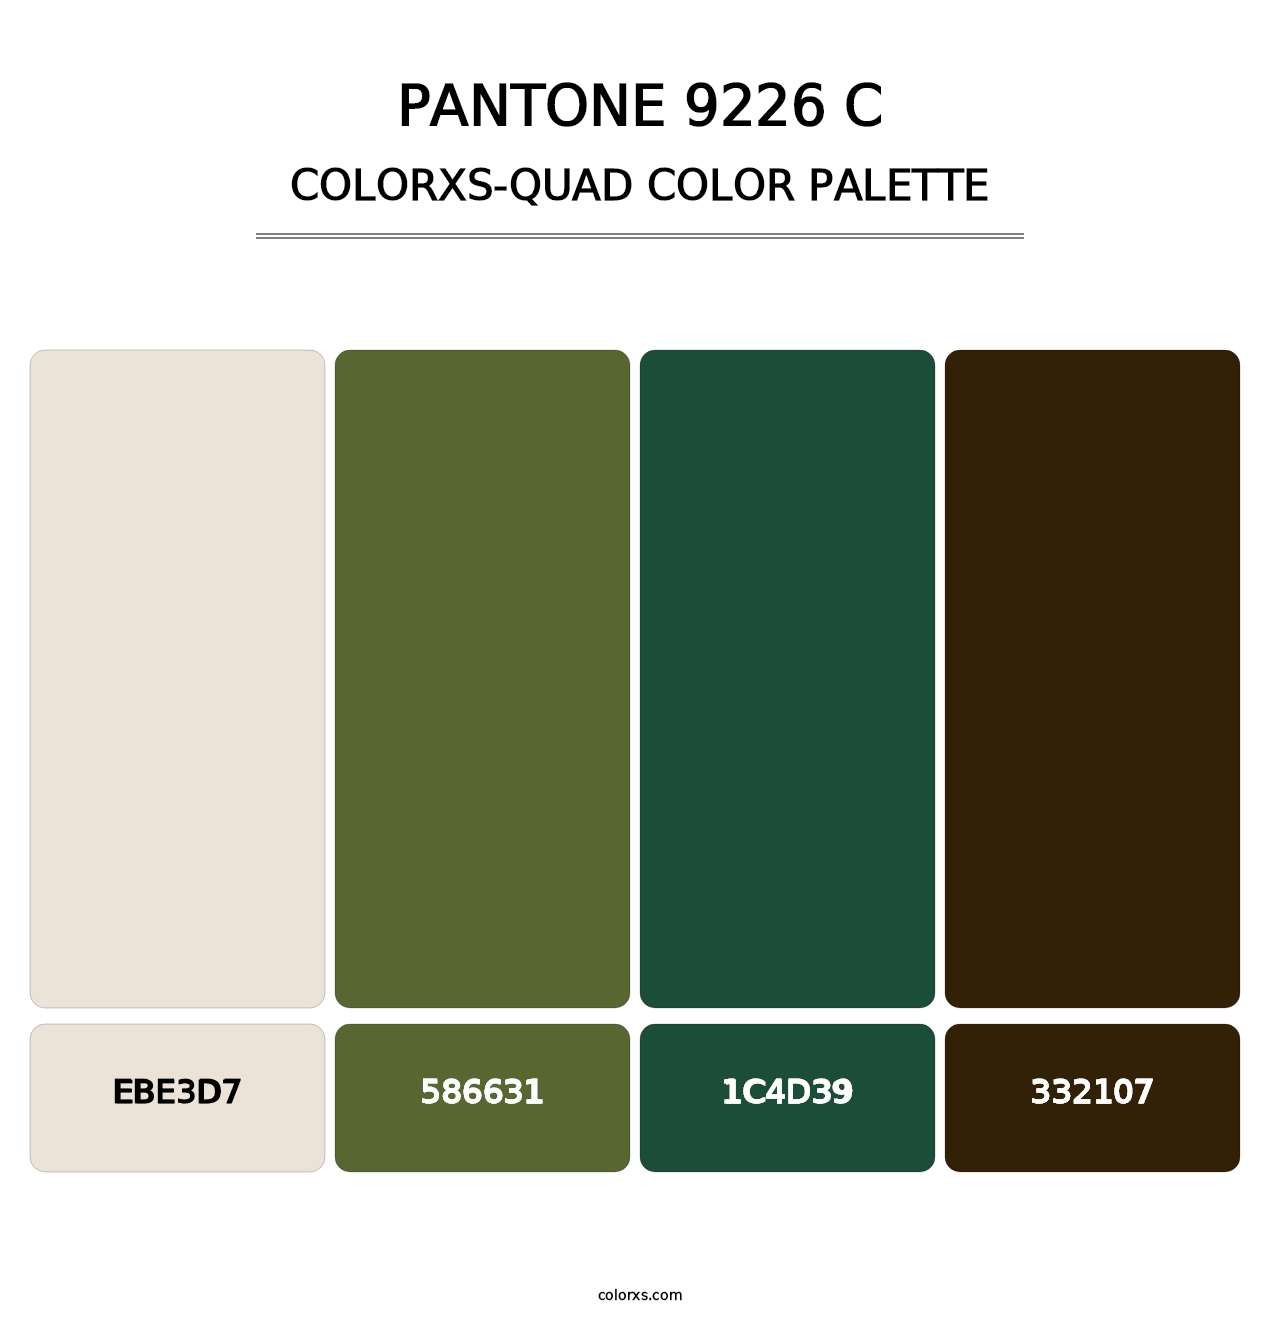 PANTONE 9226 C - Colorxs Quad Palette